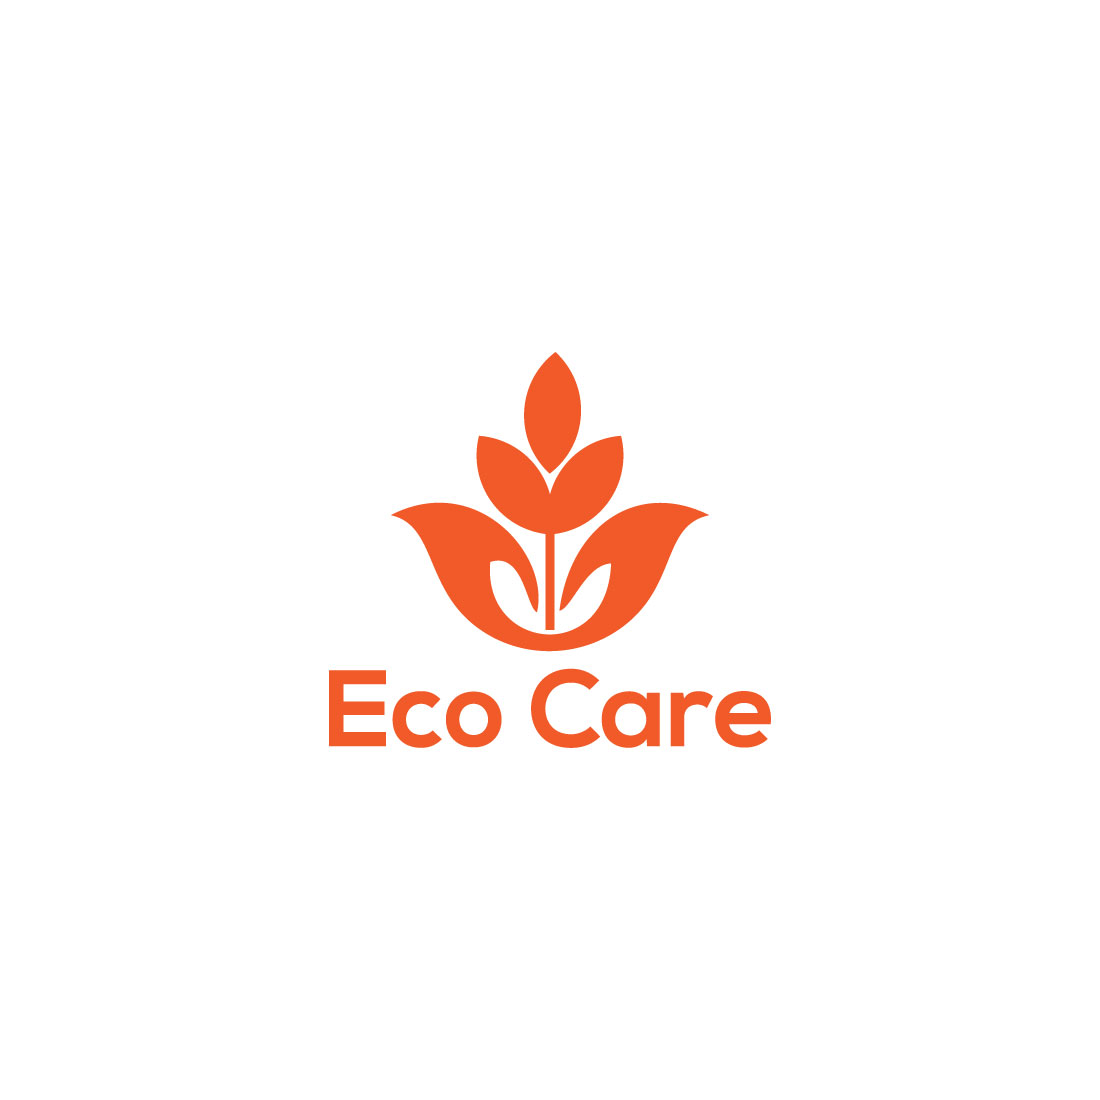 Eco Care Logo Design cover image.